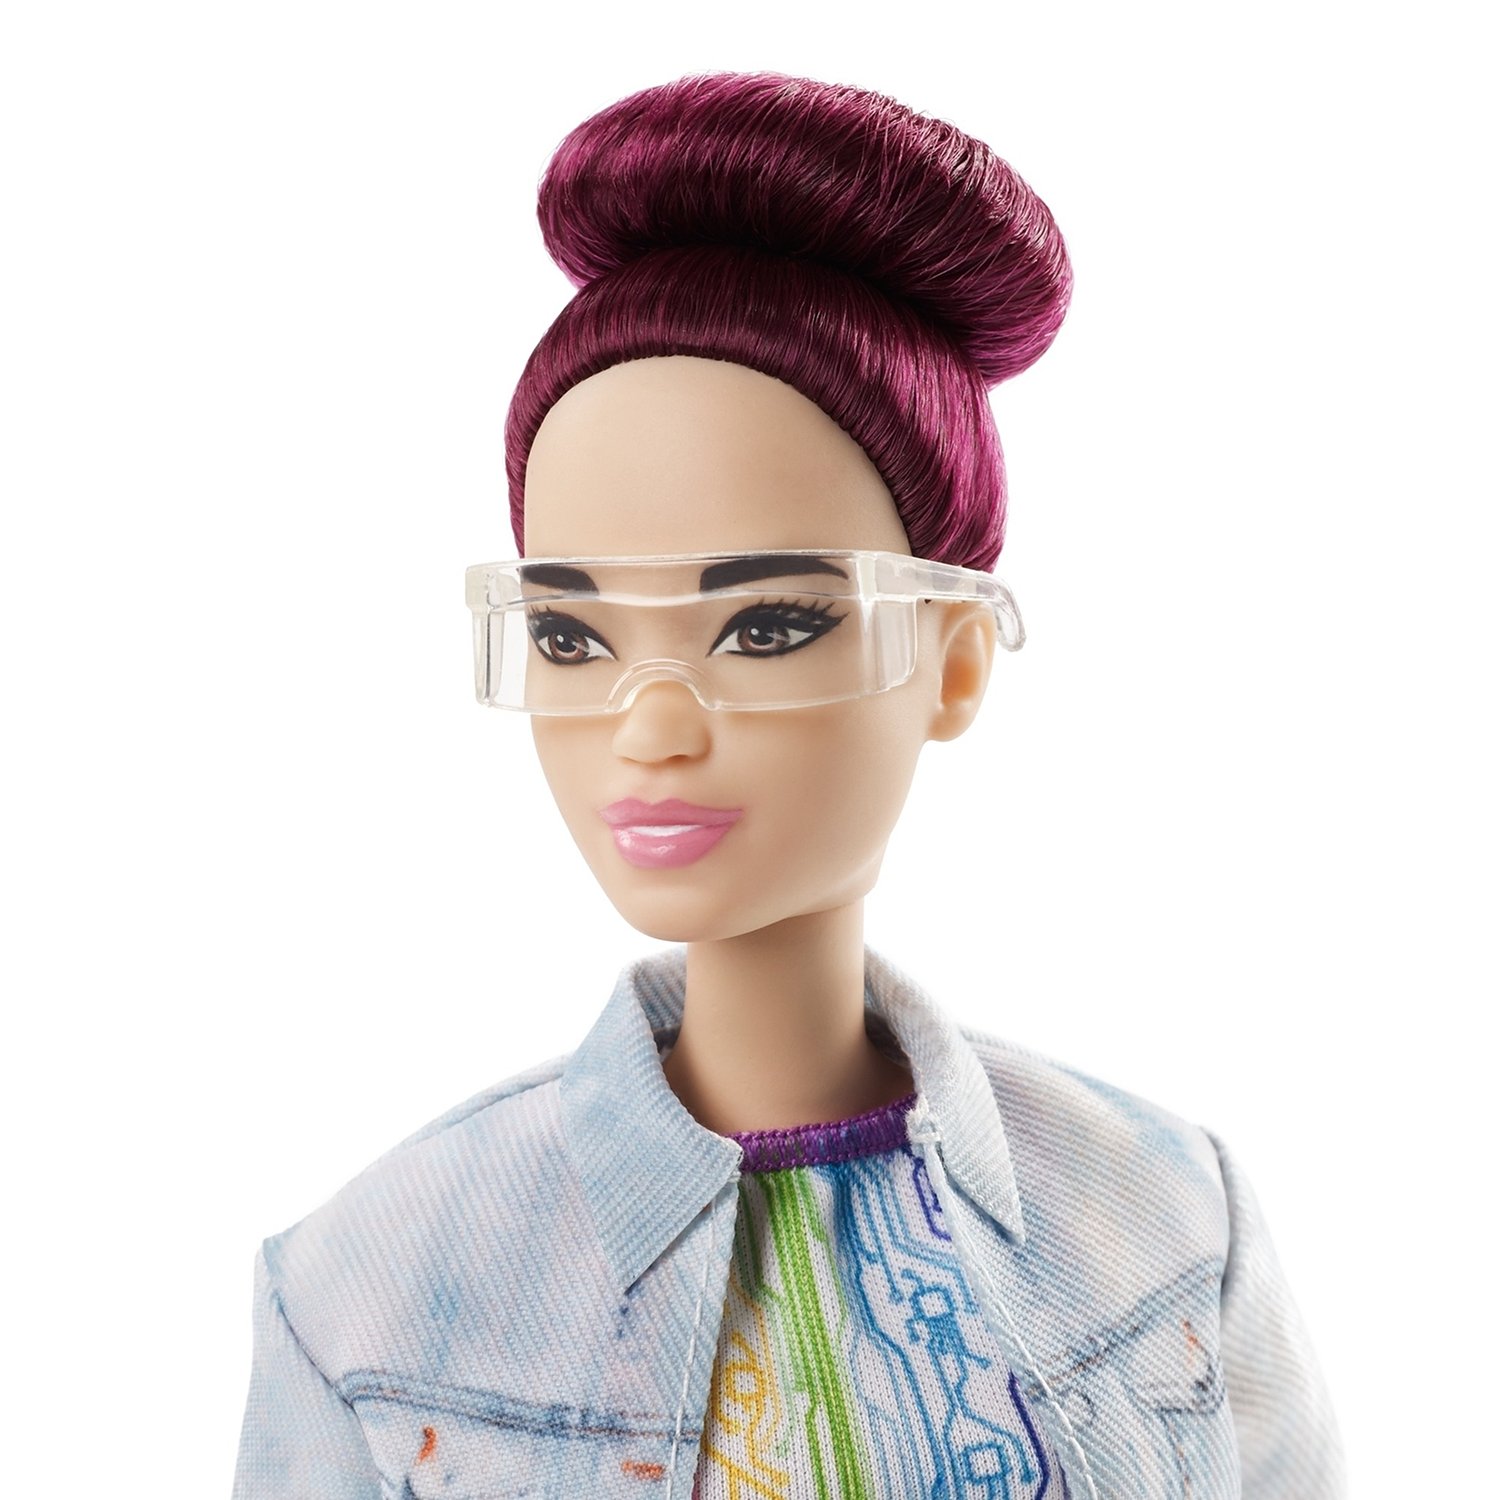 Кукла Barbie Инженер-робототехник с бордовой прической, 32 см, FRM12